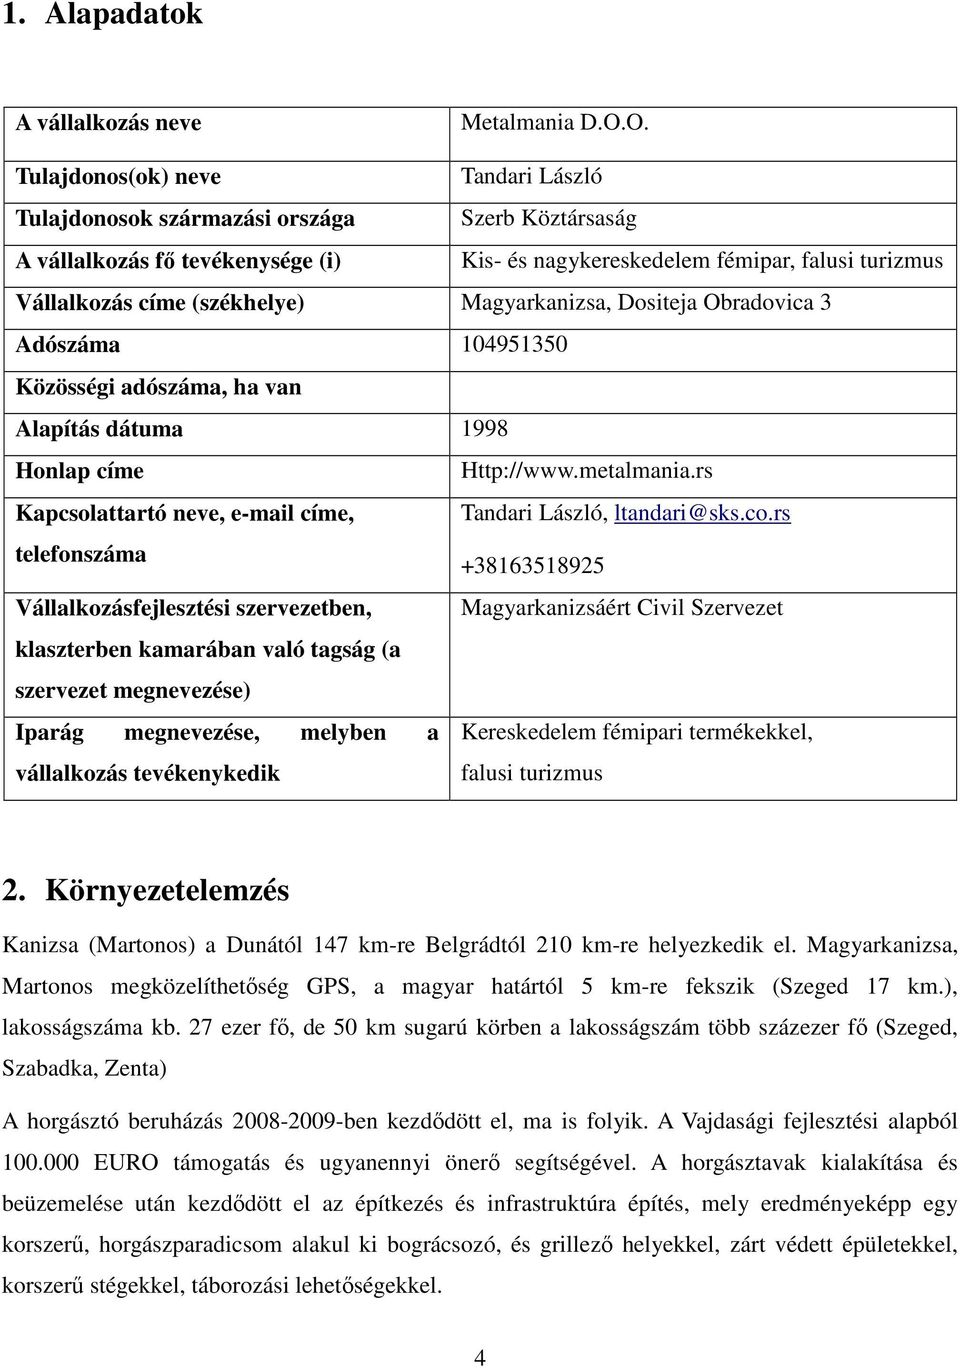 (székhelye) Magyarkanizsa, Dositeja Obradovica 3 Adószáma 104951350 Közösségi adószáma, ha van Alapítás dátuma 1998 Honlap címe Http://www.metalmania.